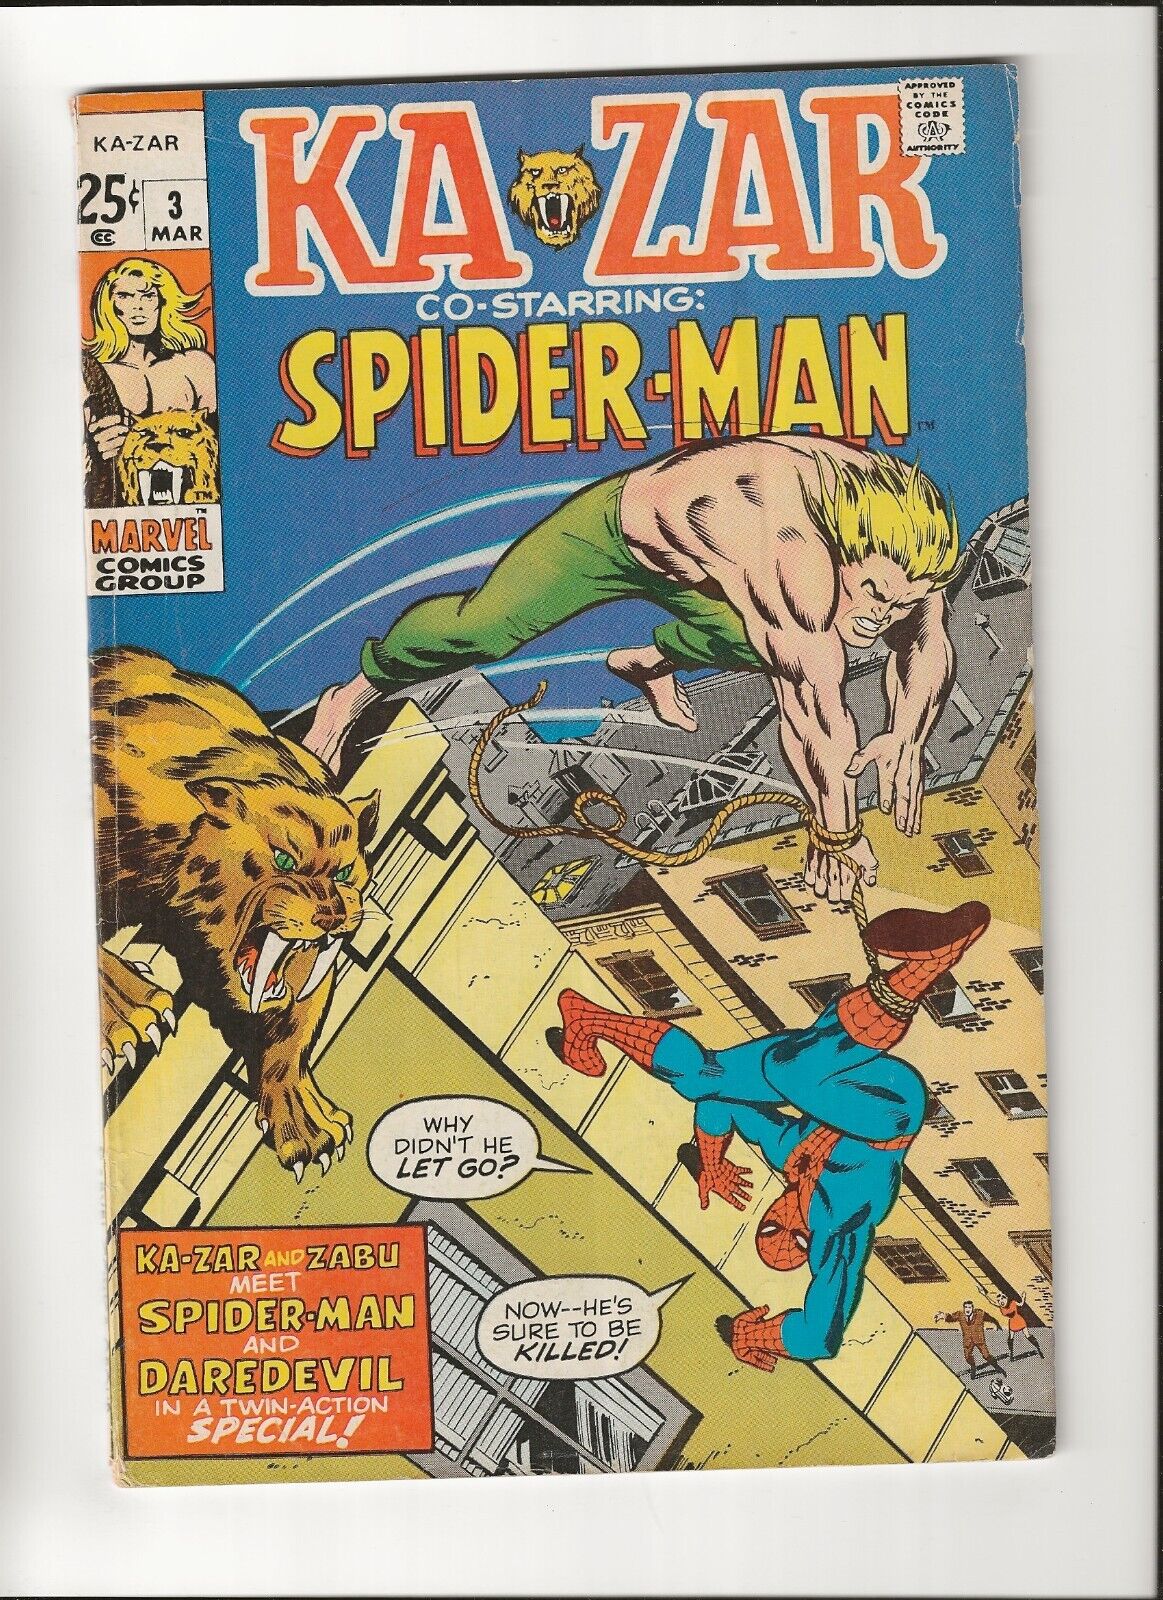 Ka-Zar #3 vol 1 Spider-Man Daredevil Appearances Reprints Low Grade 1971